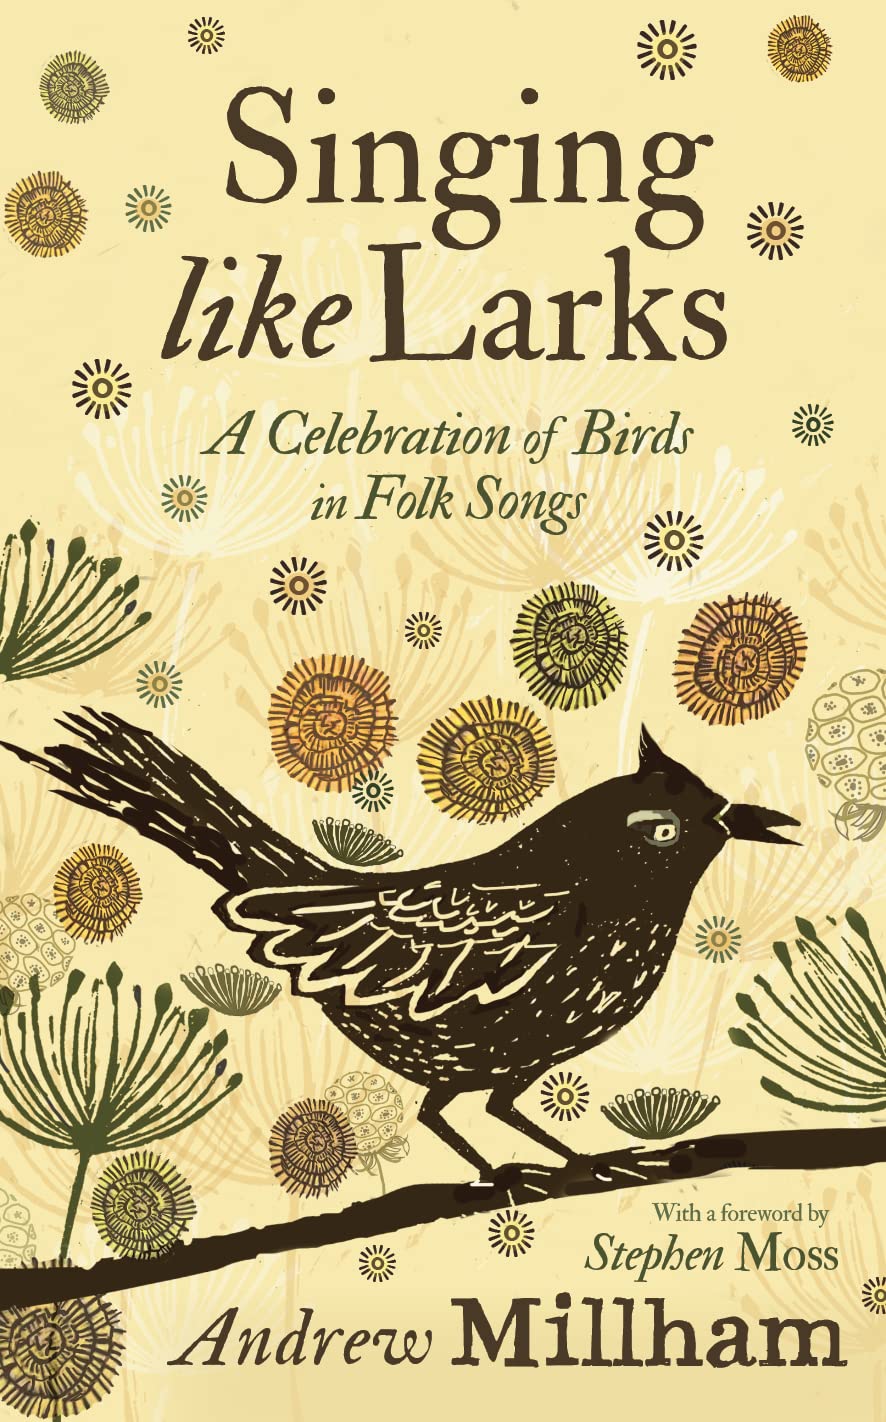 a celebration of birds in folk songs